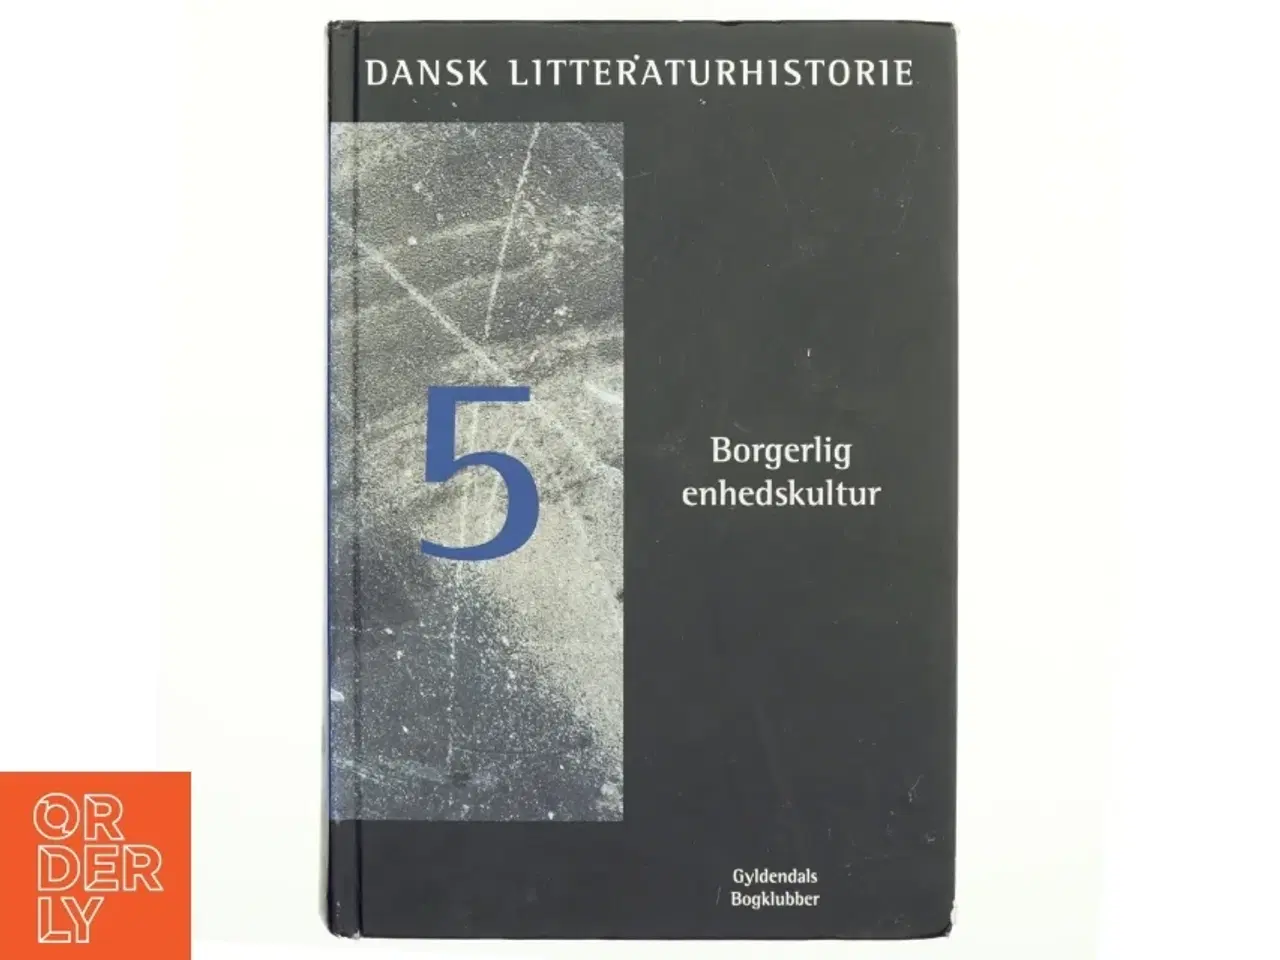 Billede 1 - Dansk litteraturhistorie 5 fra Gyldendal